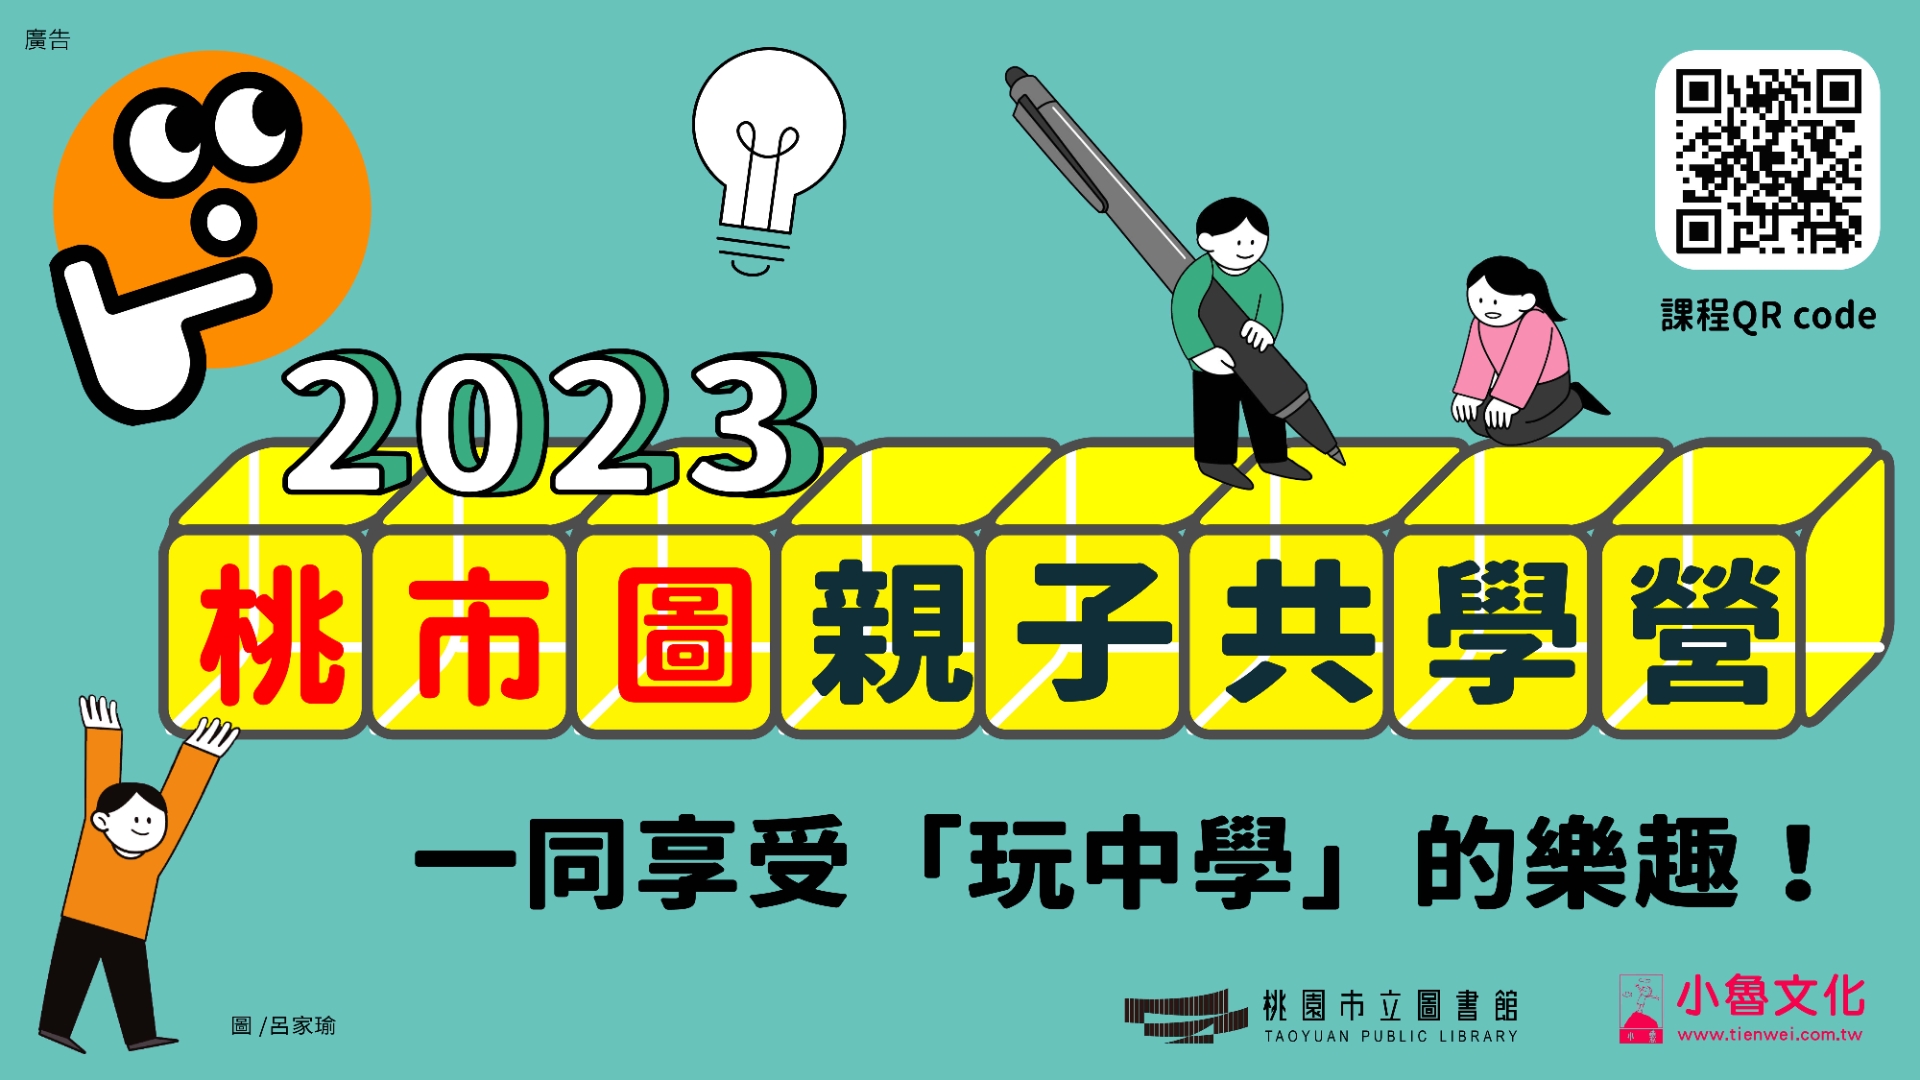 【總館講座】2023小魯親子共學營